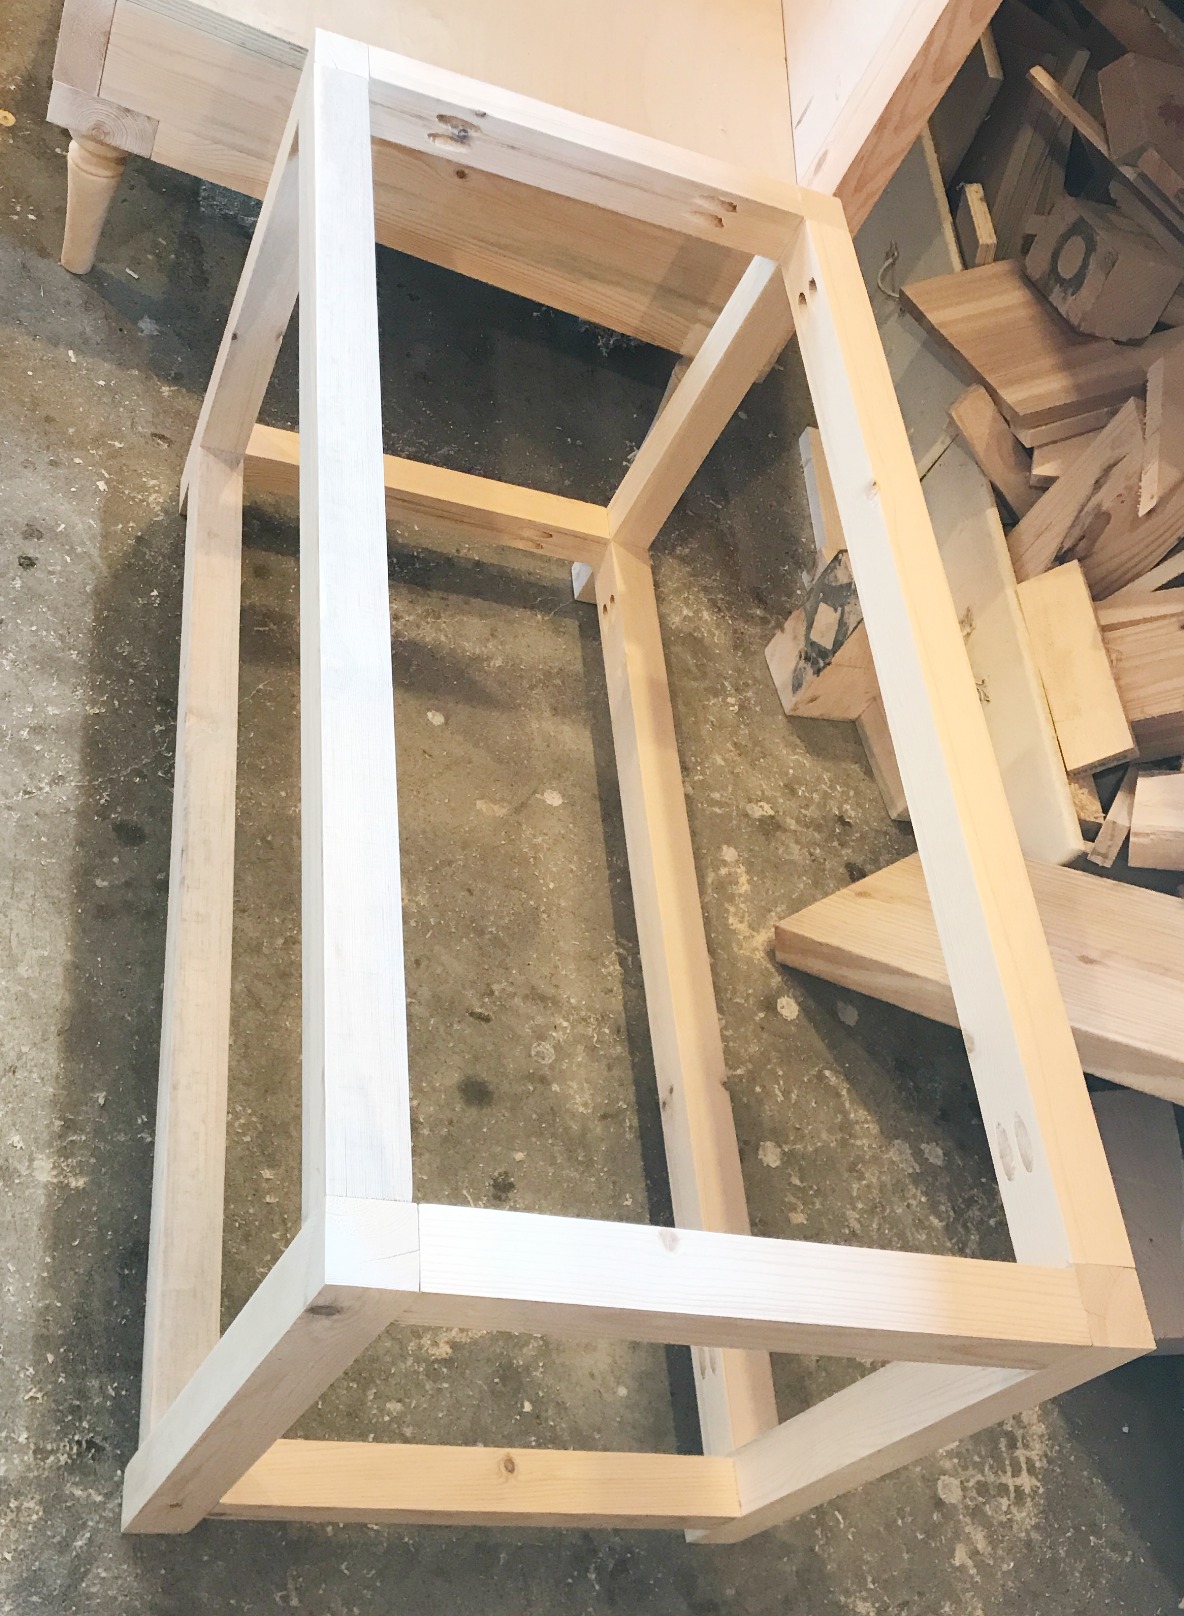 DIY Storage chest frame assembled together